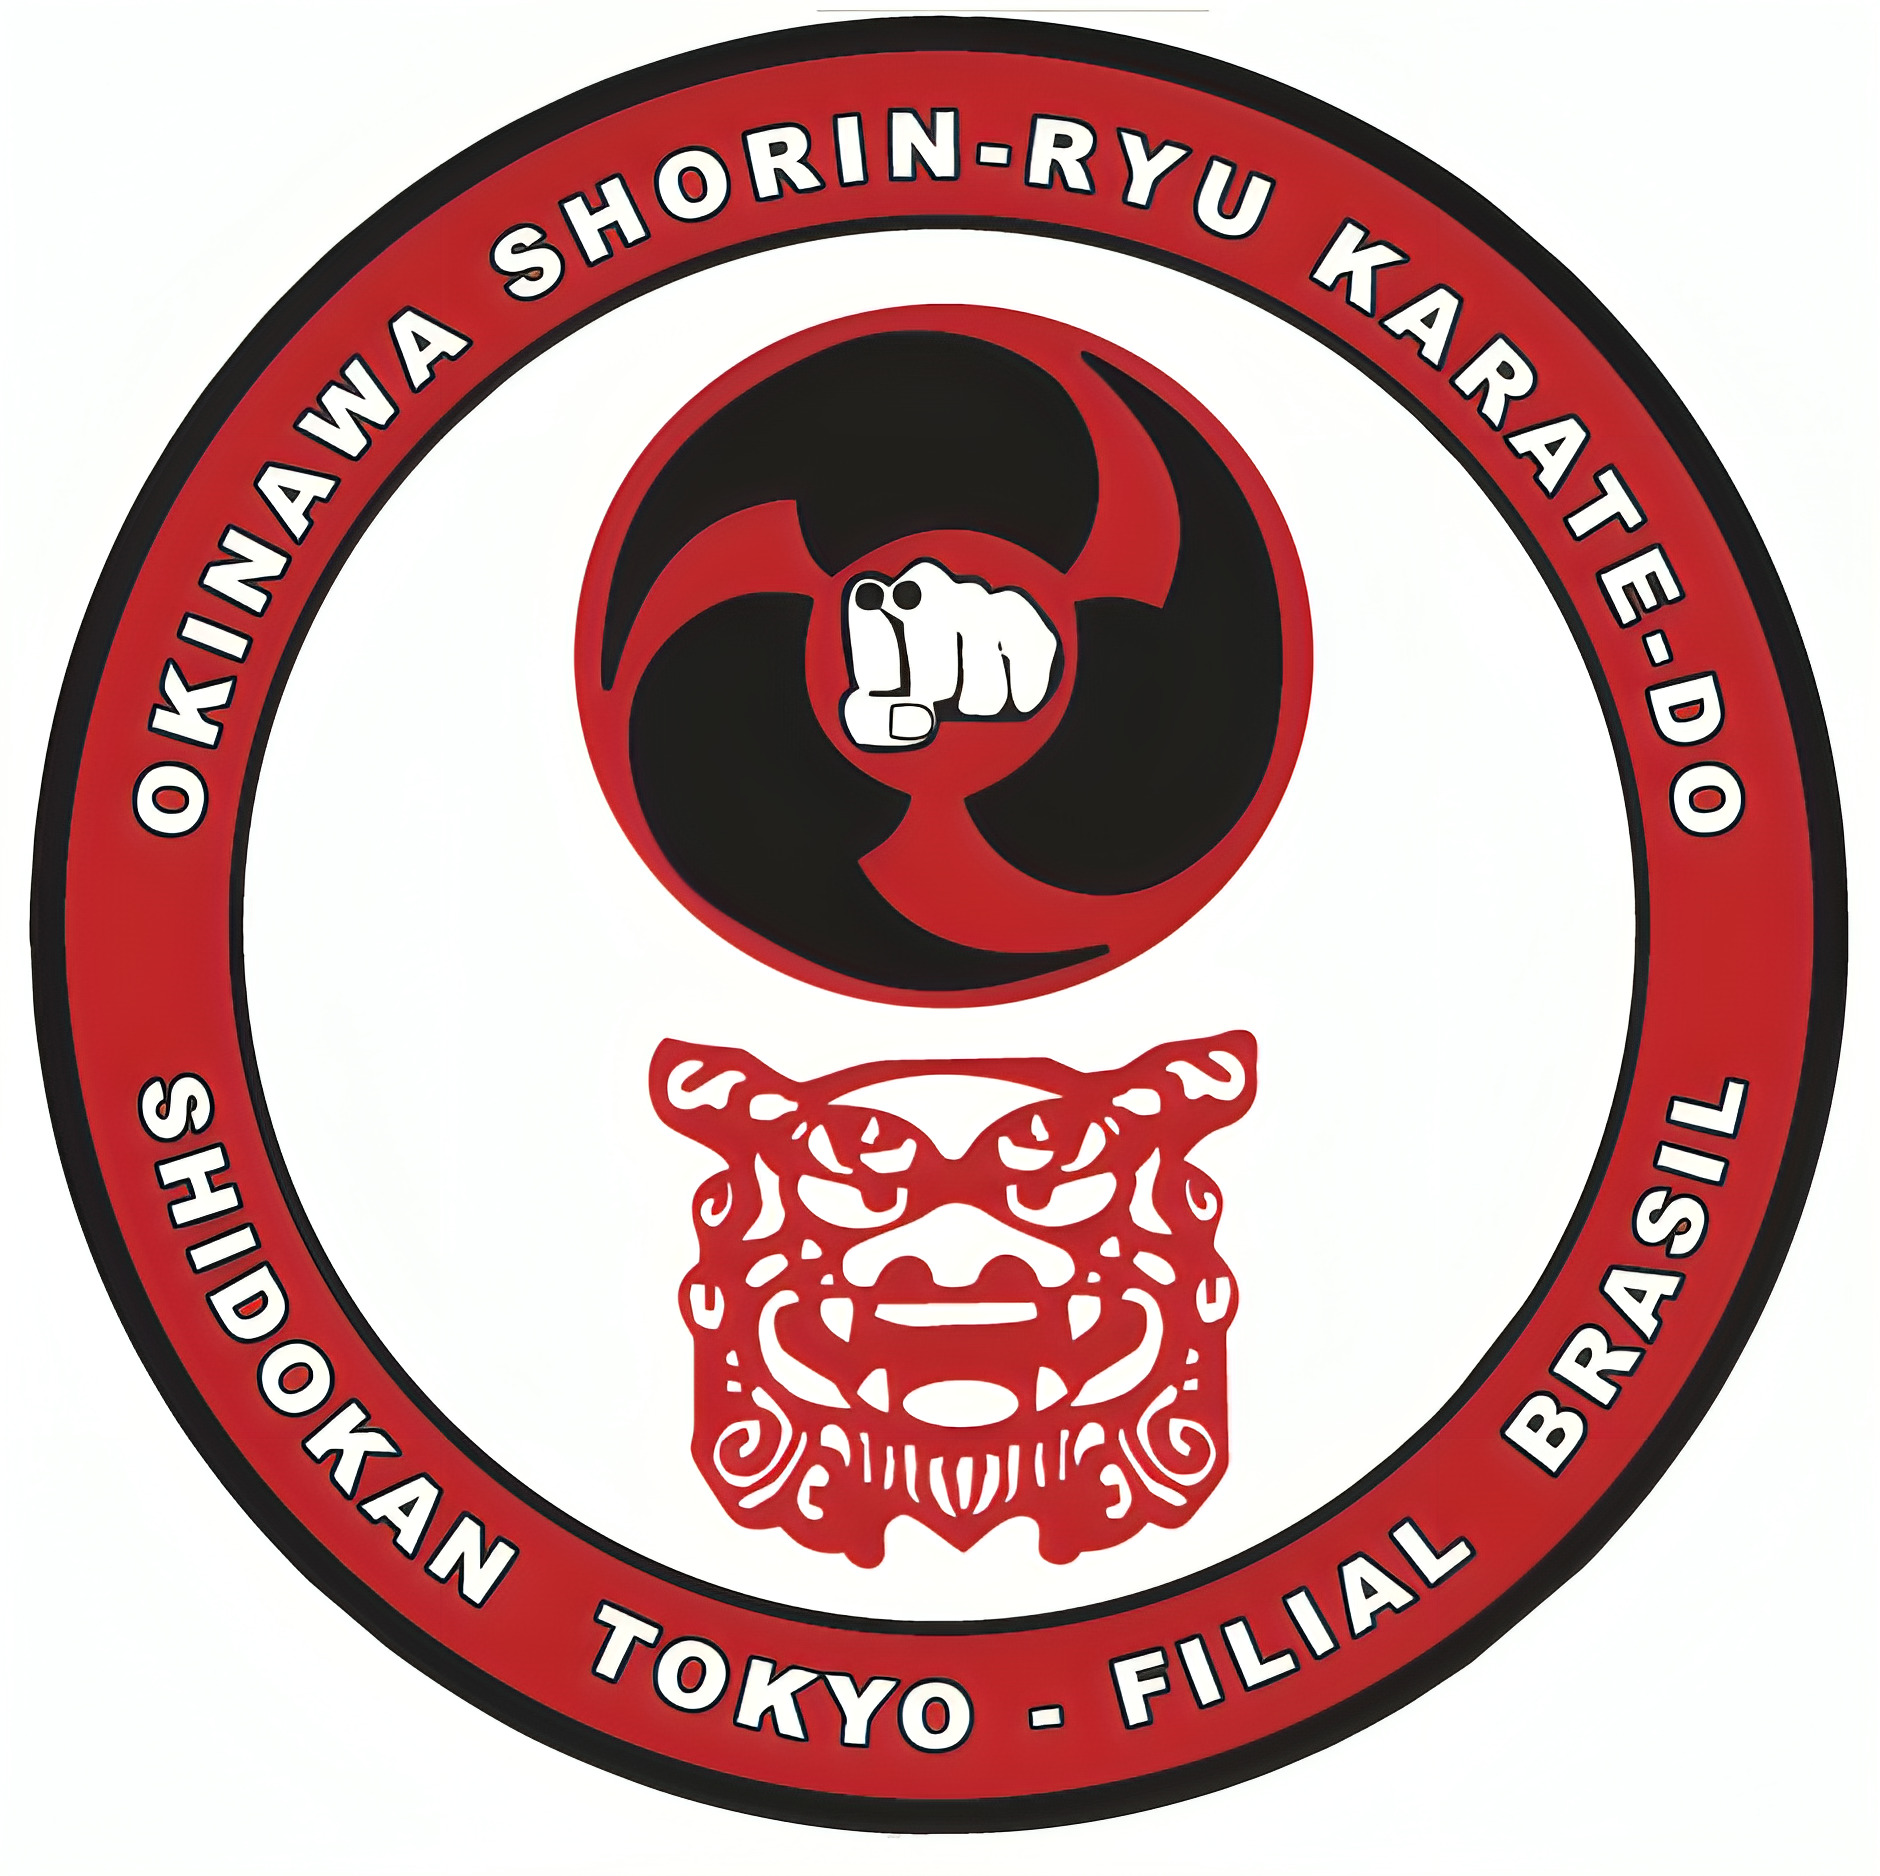 Shidokan Tokyo – Filial Brasil Okinawa Shorin Ryu Karate do 